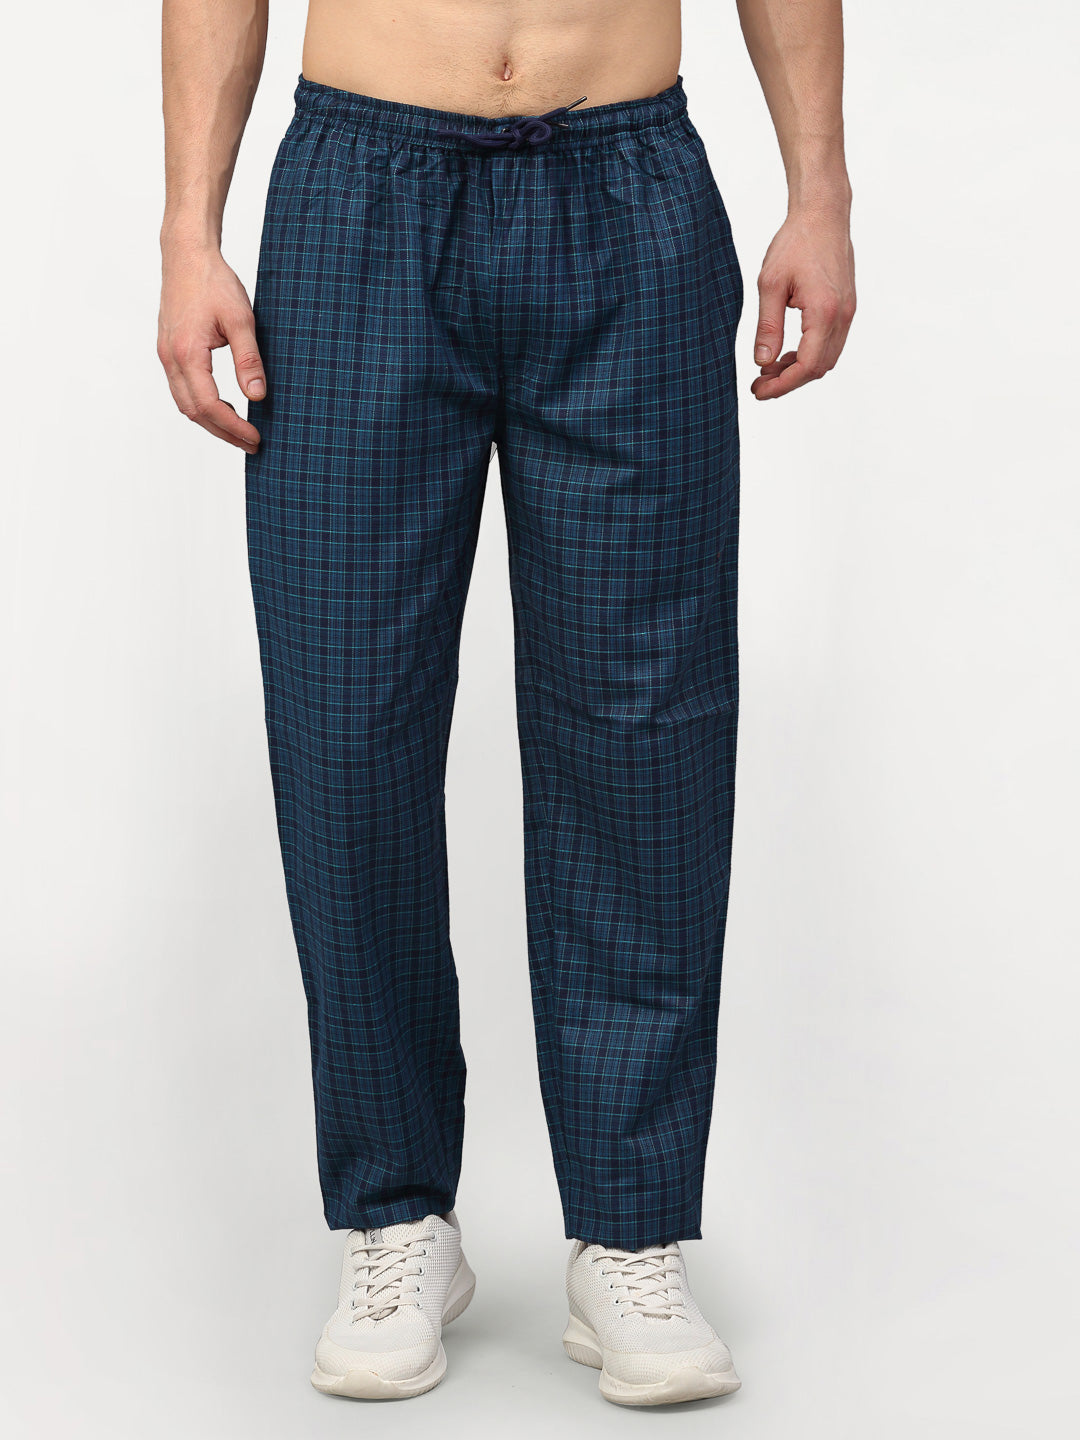 Jainish Men's Blue Cotton Checked Track Pants ( JOG 017Blue ) - Distacart